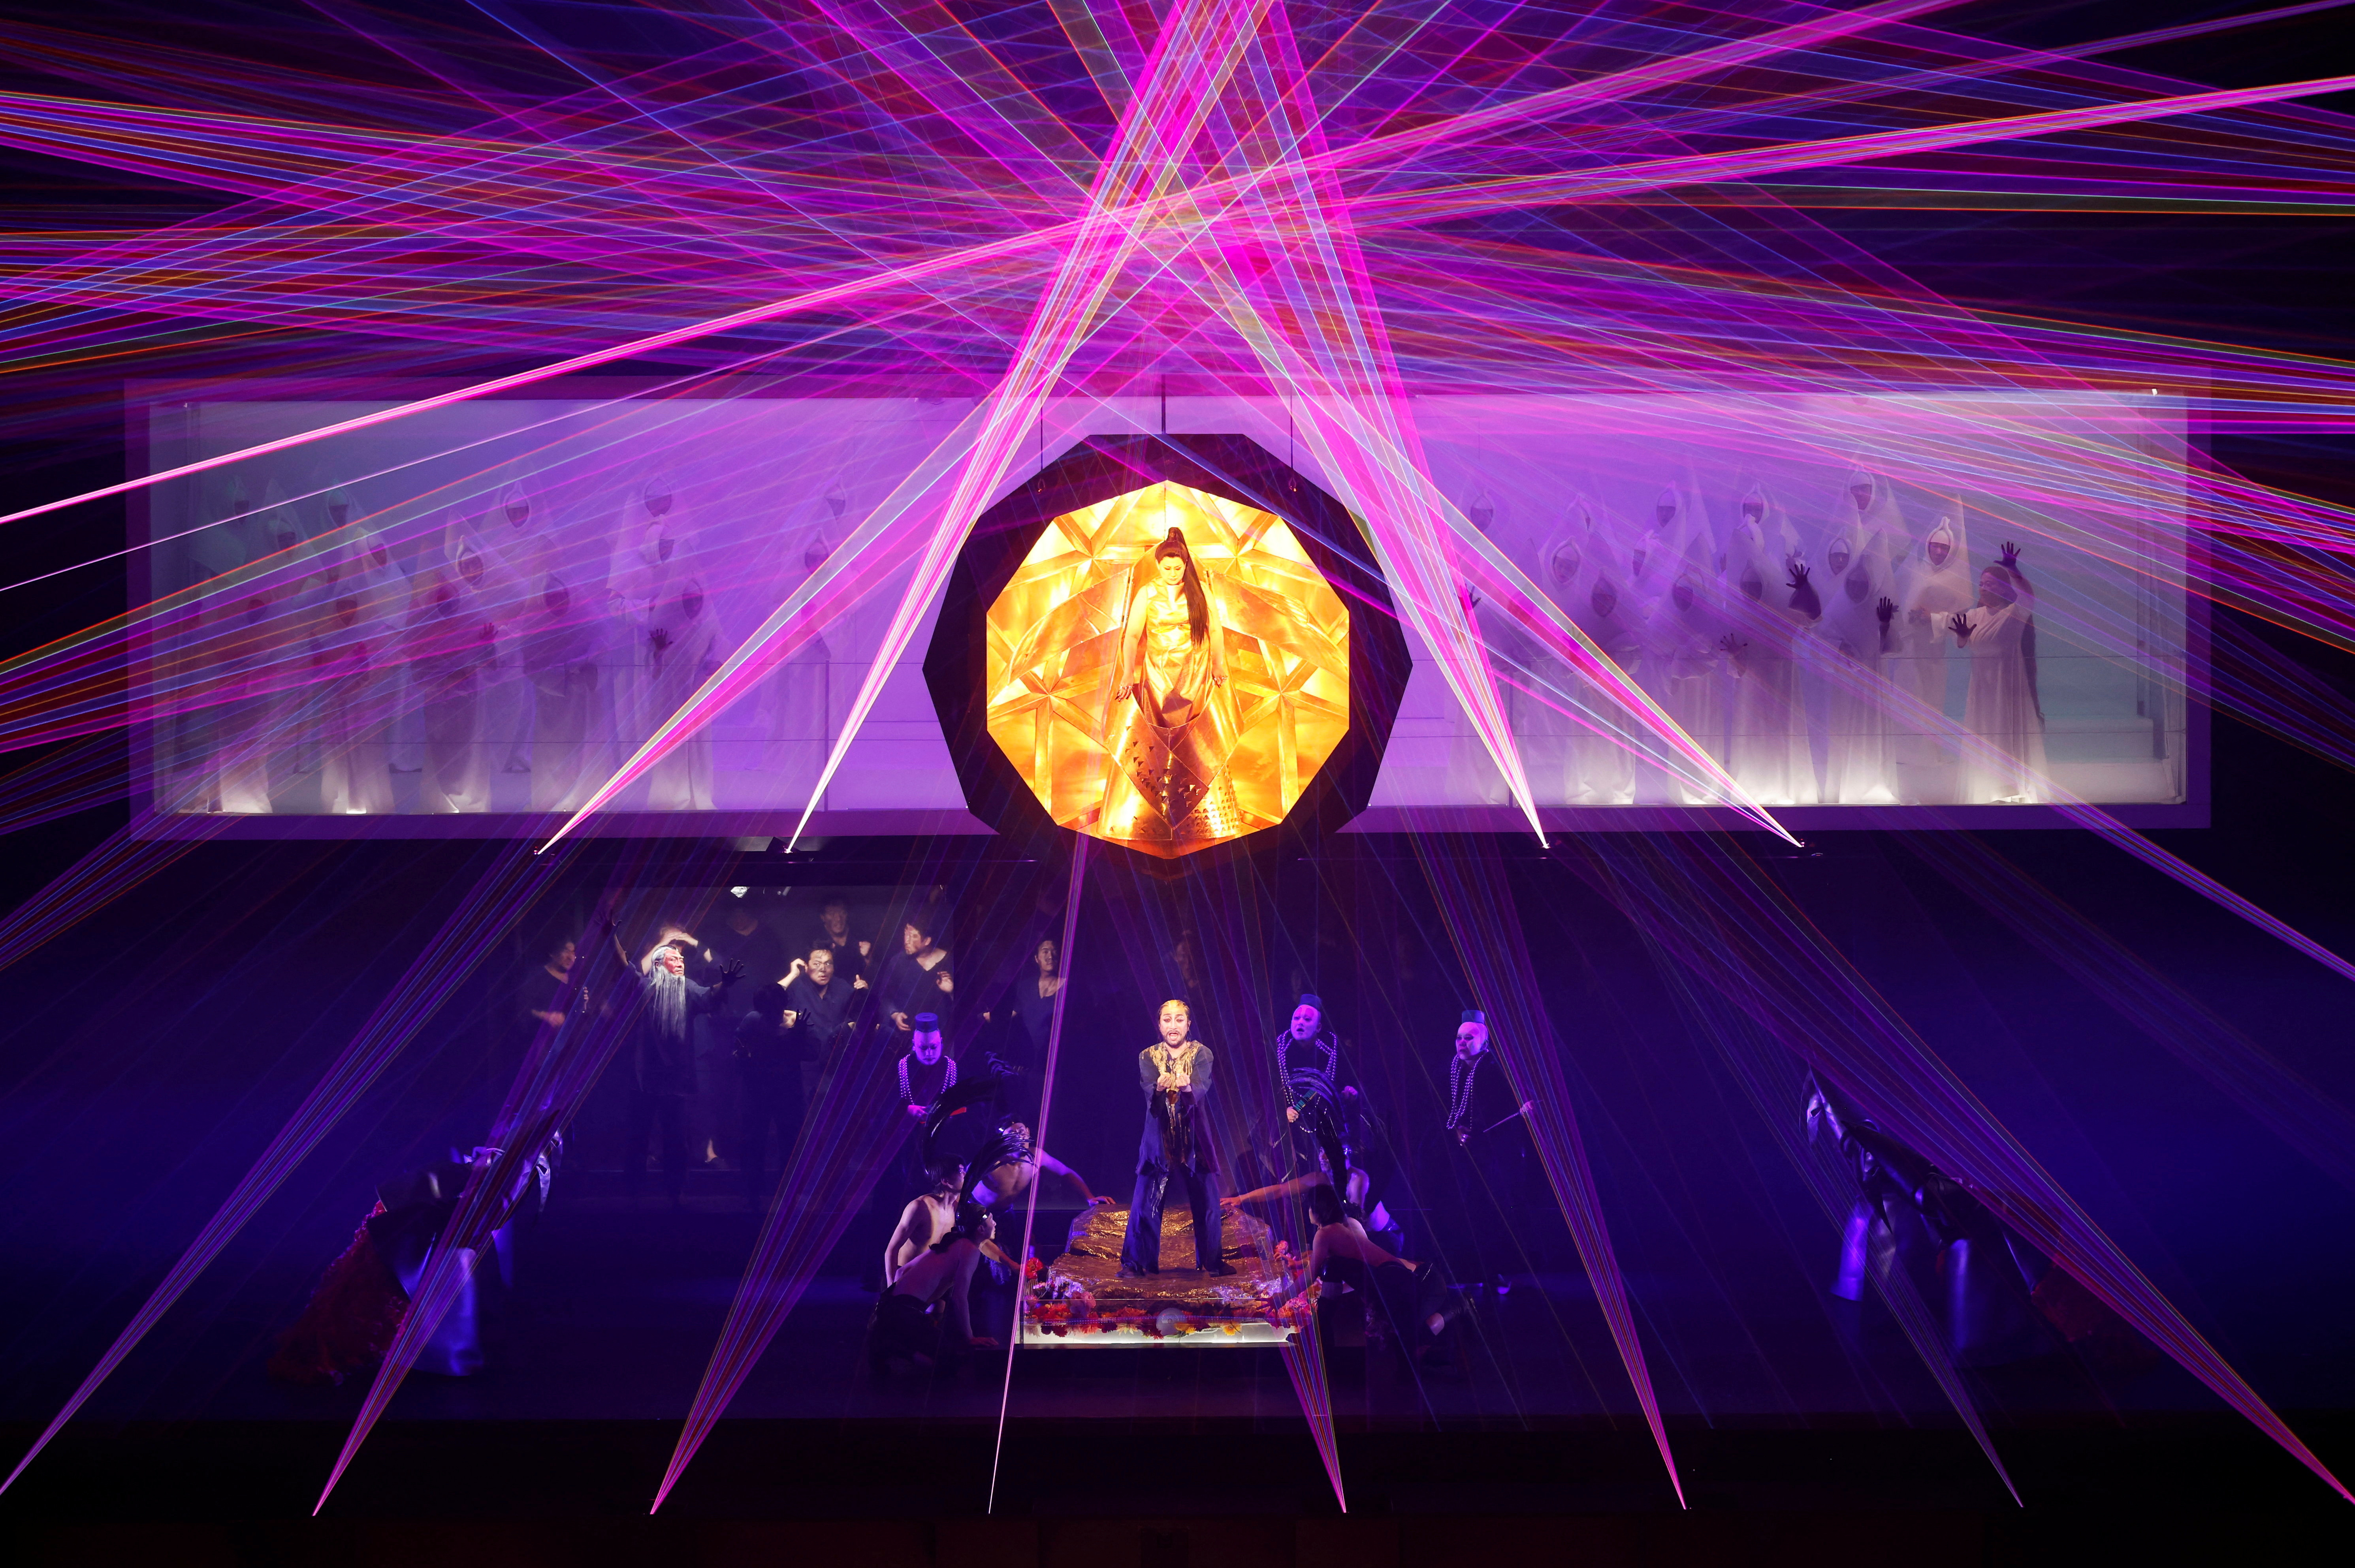 Los miembros del reparto interpretan Turandot de Giacomo Puccini con luces láser inmersivas creadas por 'teamLab' en Tokio